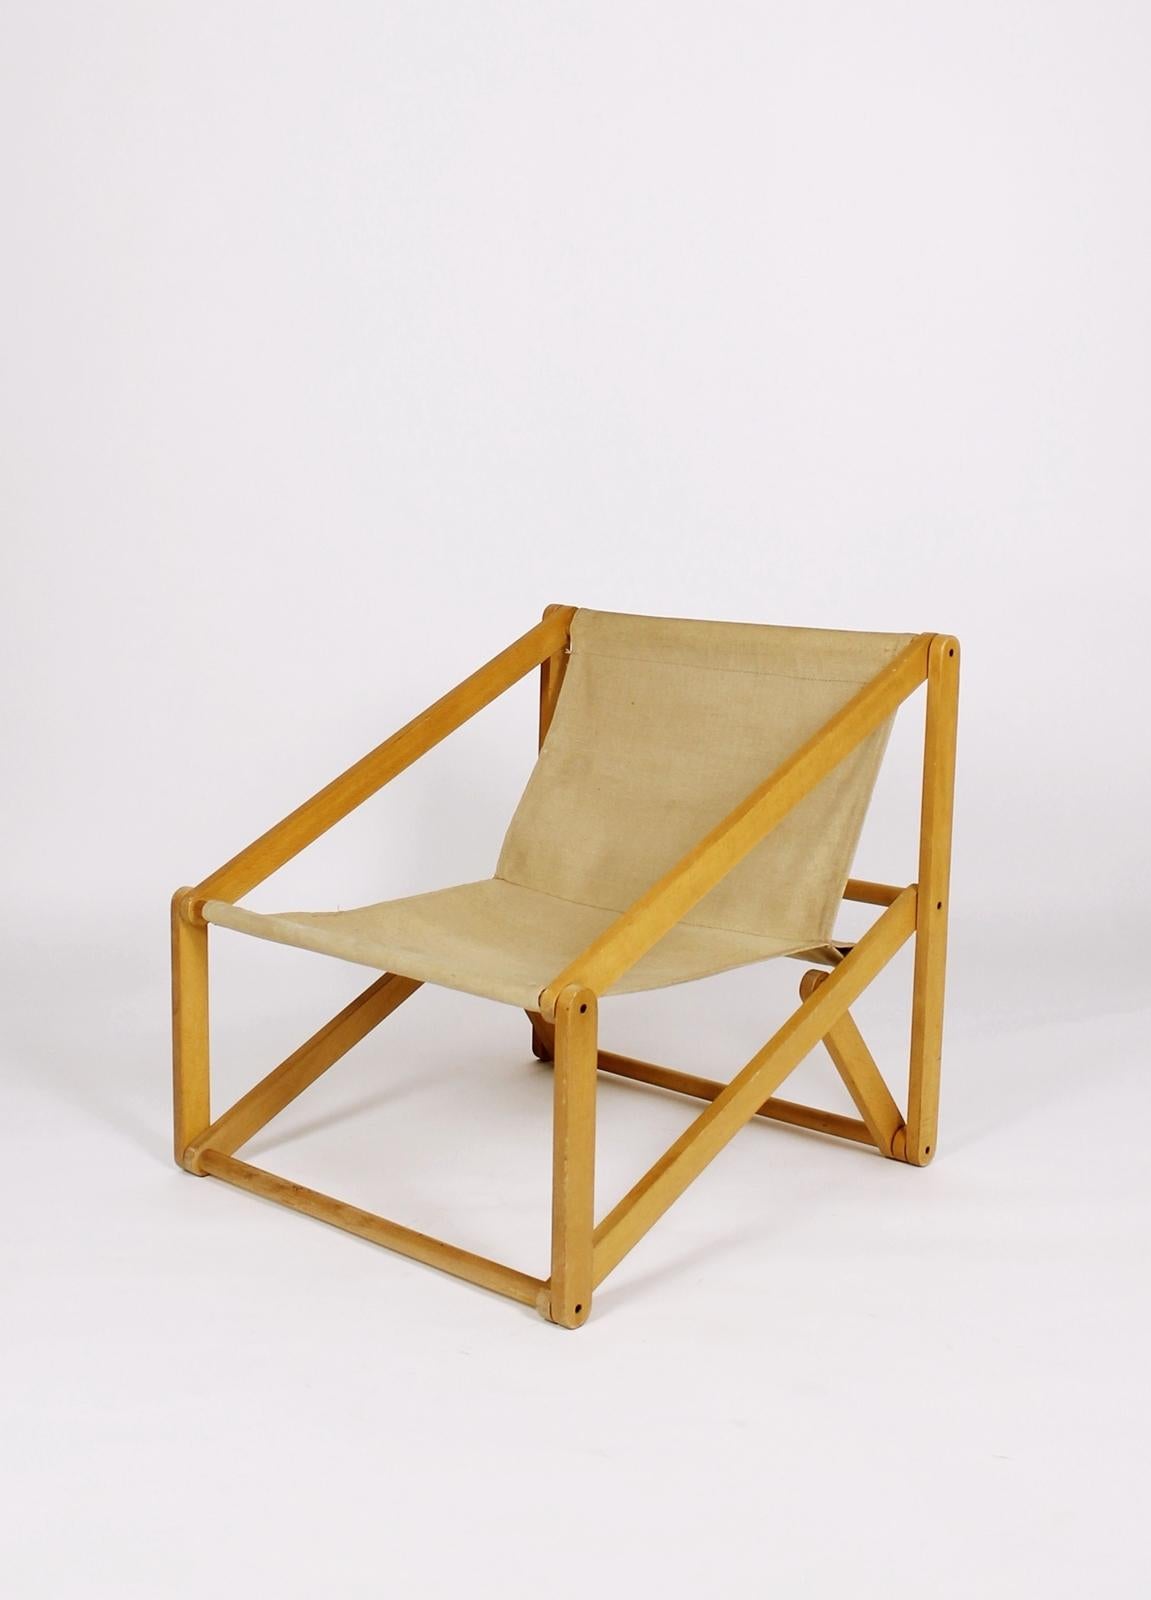 Stunning folding easy chair London
by Günter Sulz, designed in 1971
Made by Behr & Sulz Stuttgart 

beech wood frame, canvas cover



Neue Möbel, 1982, S. 47; Möbeldesigner Portraits Baden Württemberg, S. 115.

Bundespreis 'Gute Form',